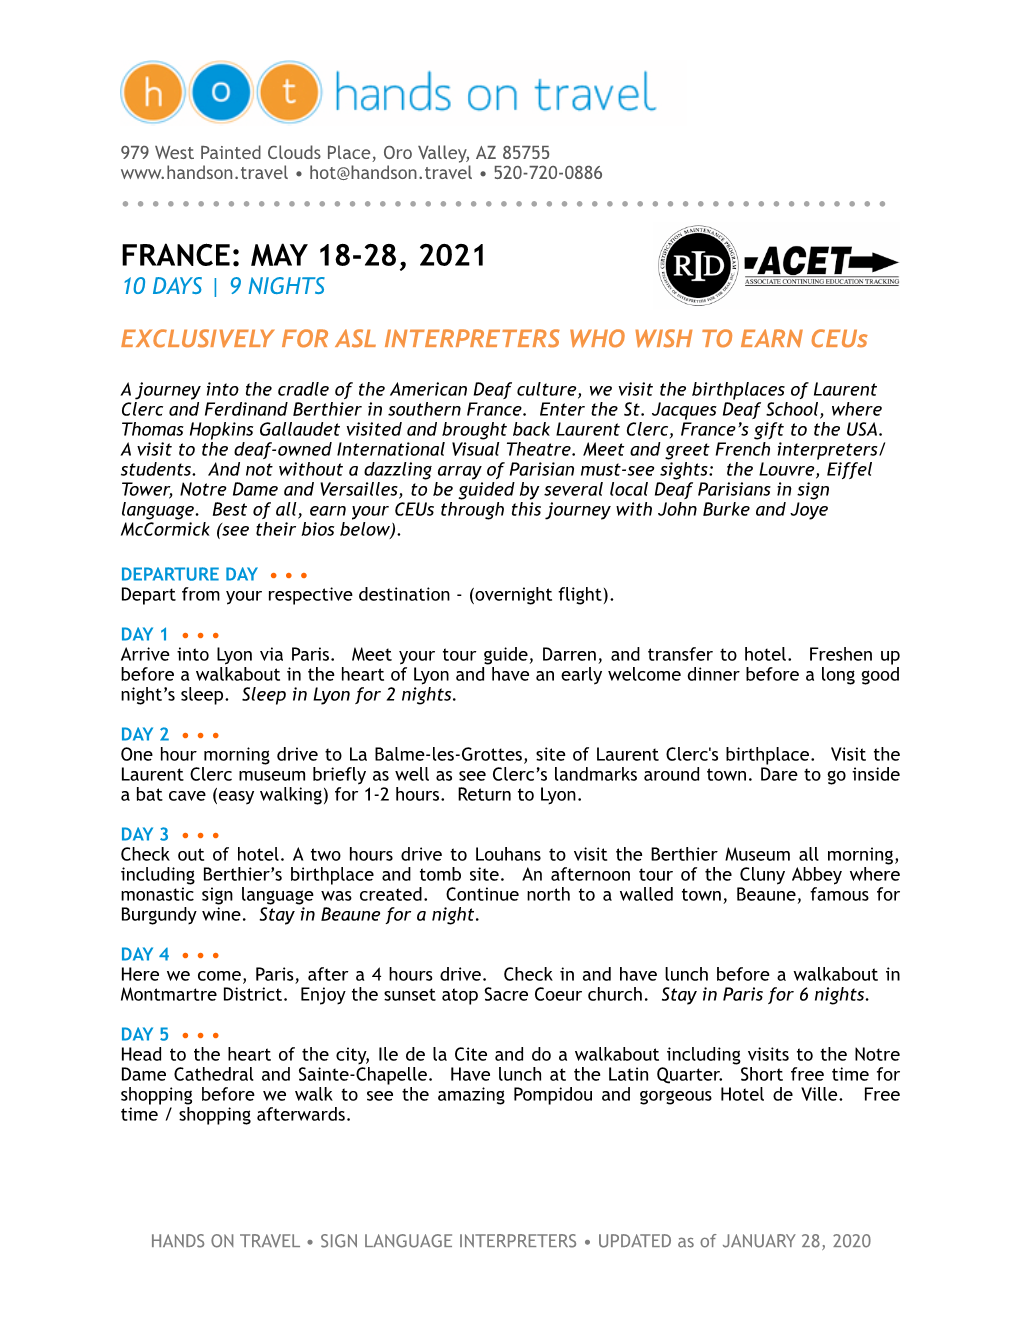 France: May 18-28, 2021 10 Days | 9 Nights